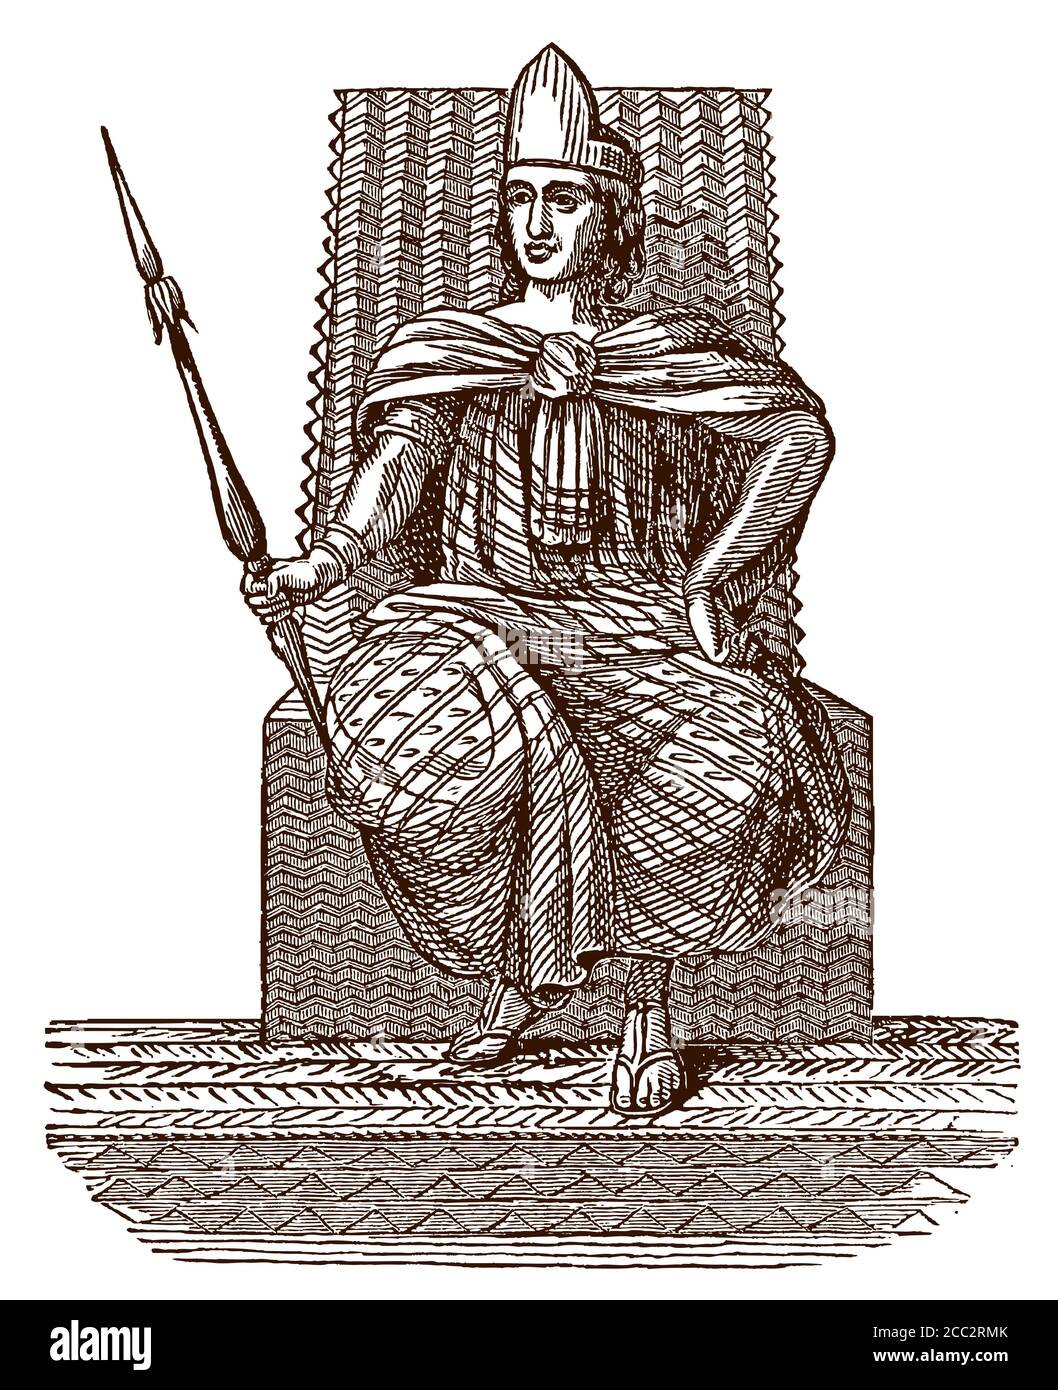 Montezuma II., der historische aztekische Herrscher von Tenochtitlan sitzt auf seinem Thron und hält einen Speer. Illustration nach einem antiken Stich Stock Vektor